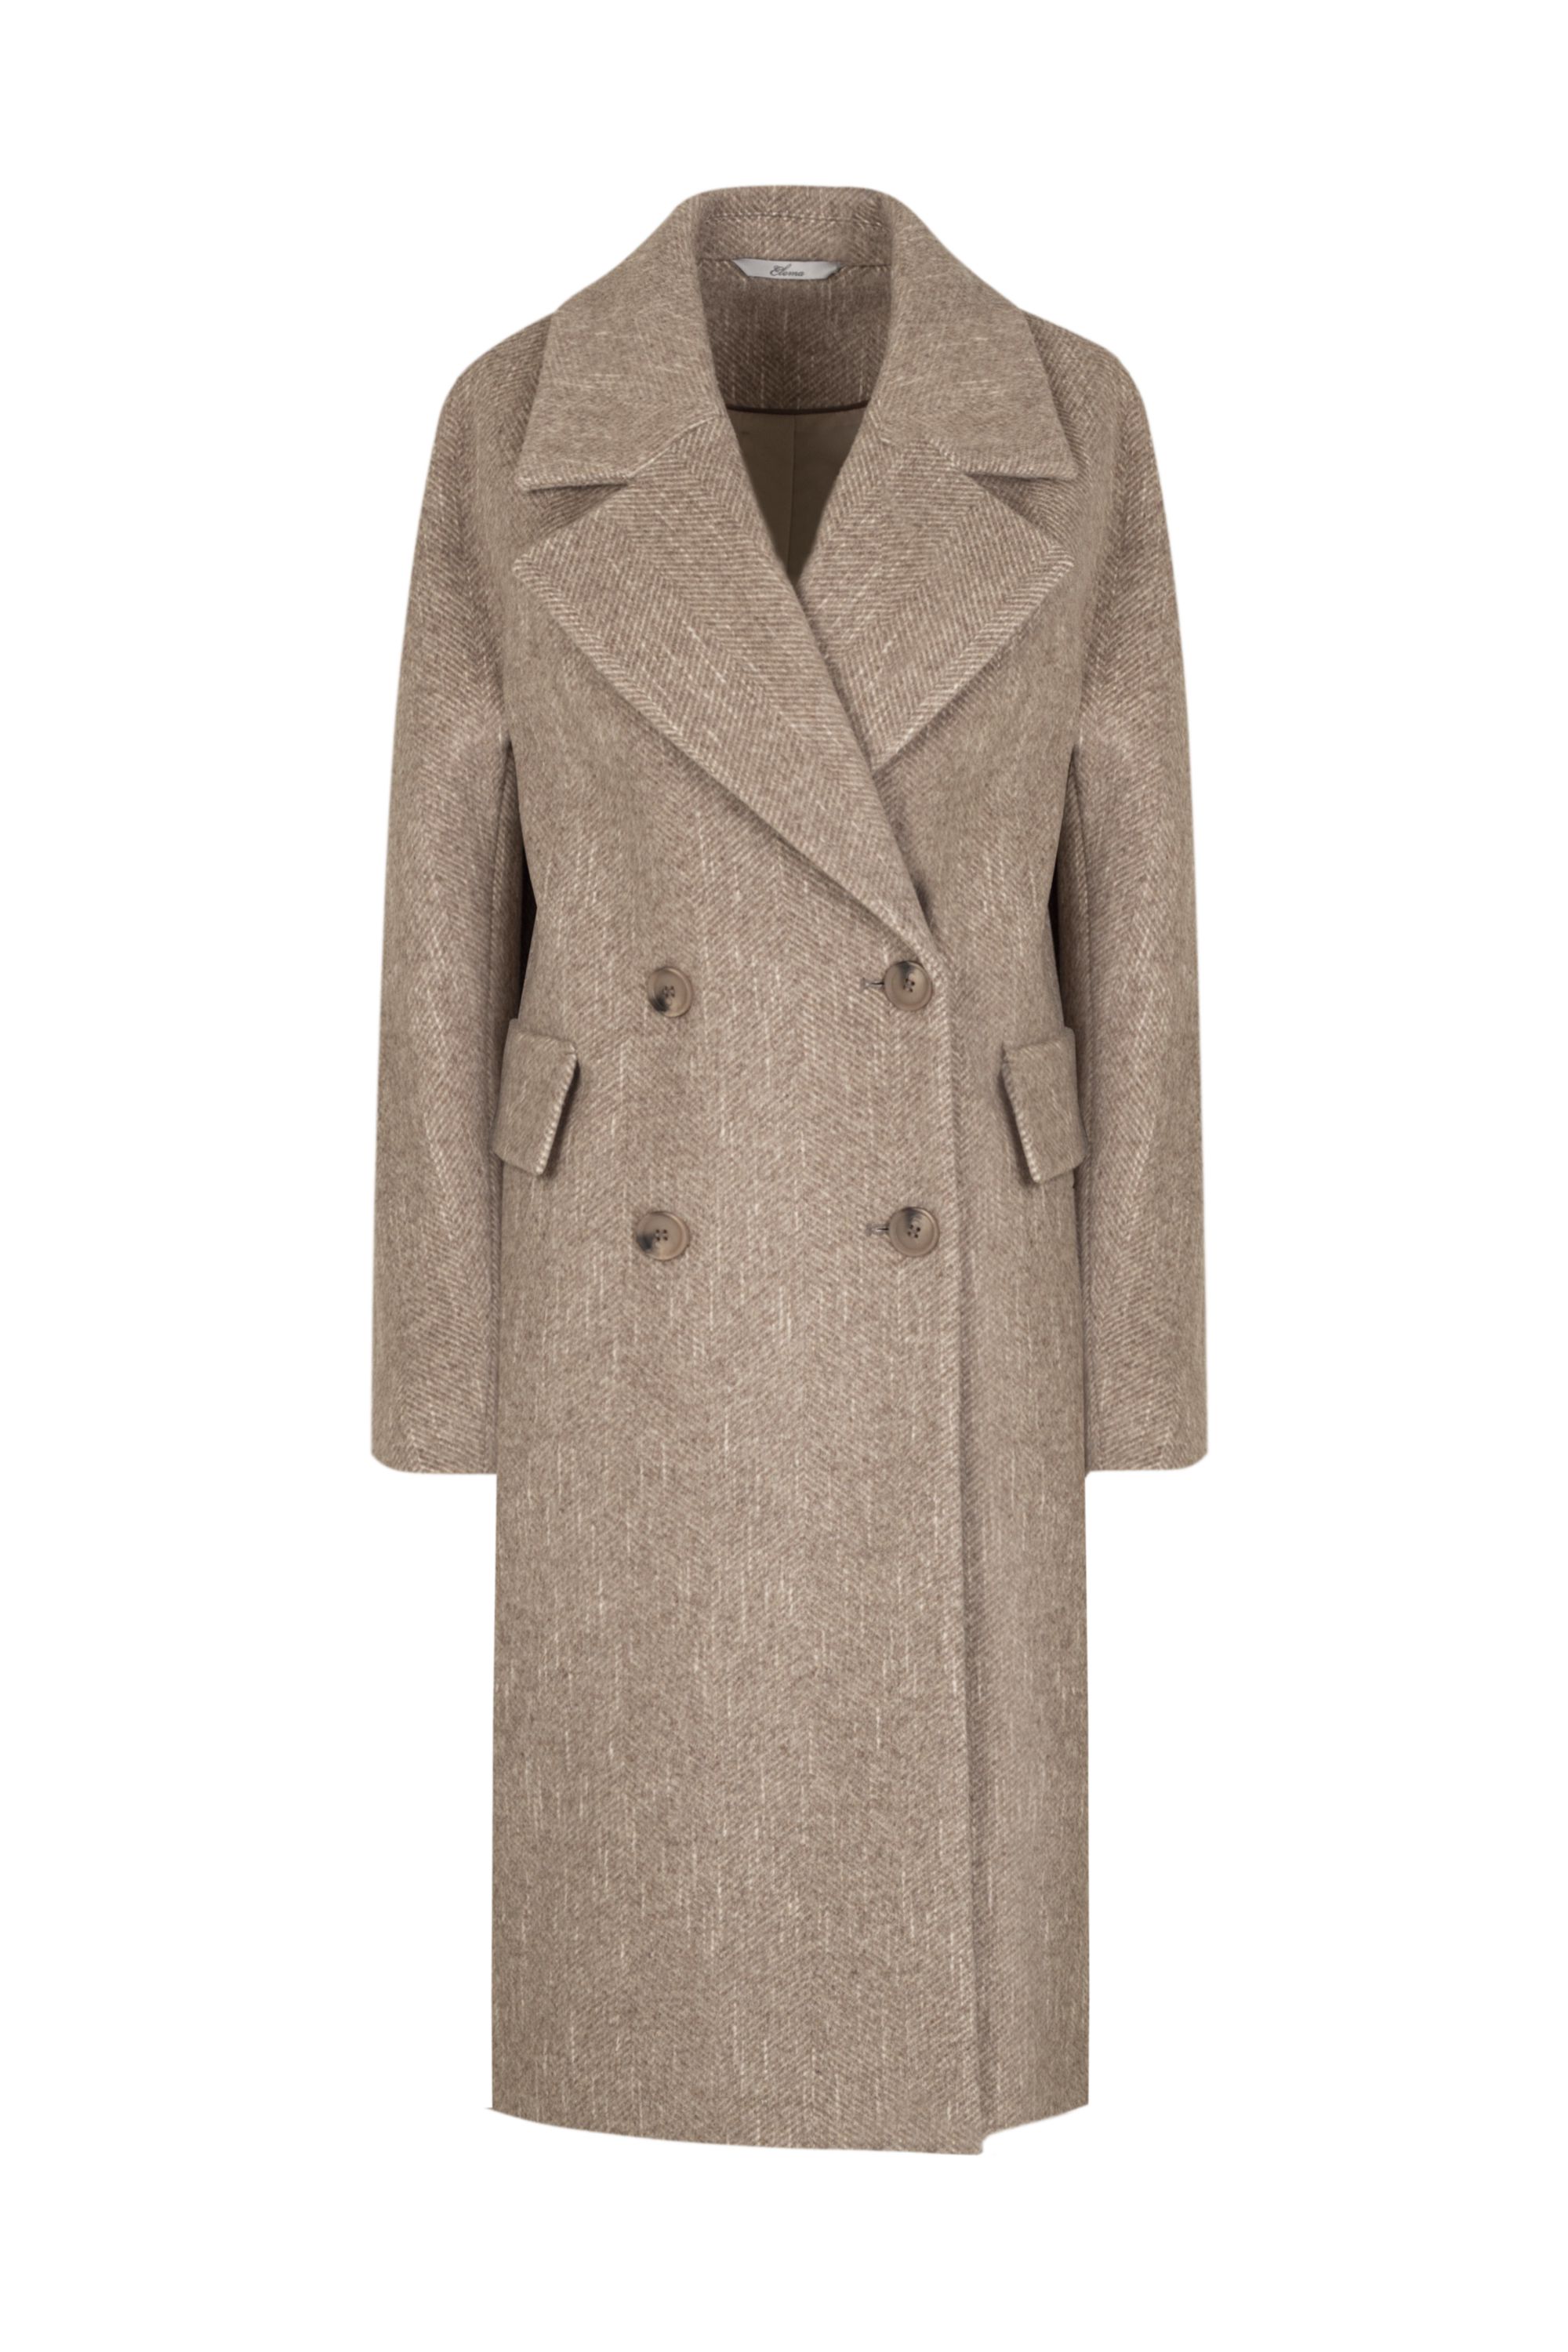 Пальто женское демисезонное 1-12200-1. Фото 1.